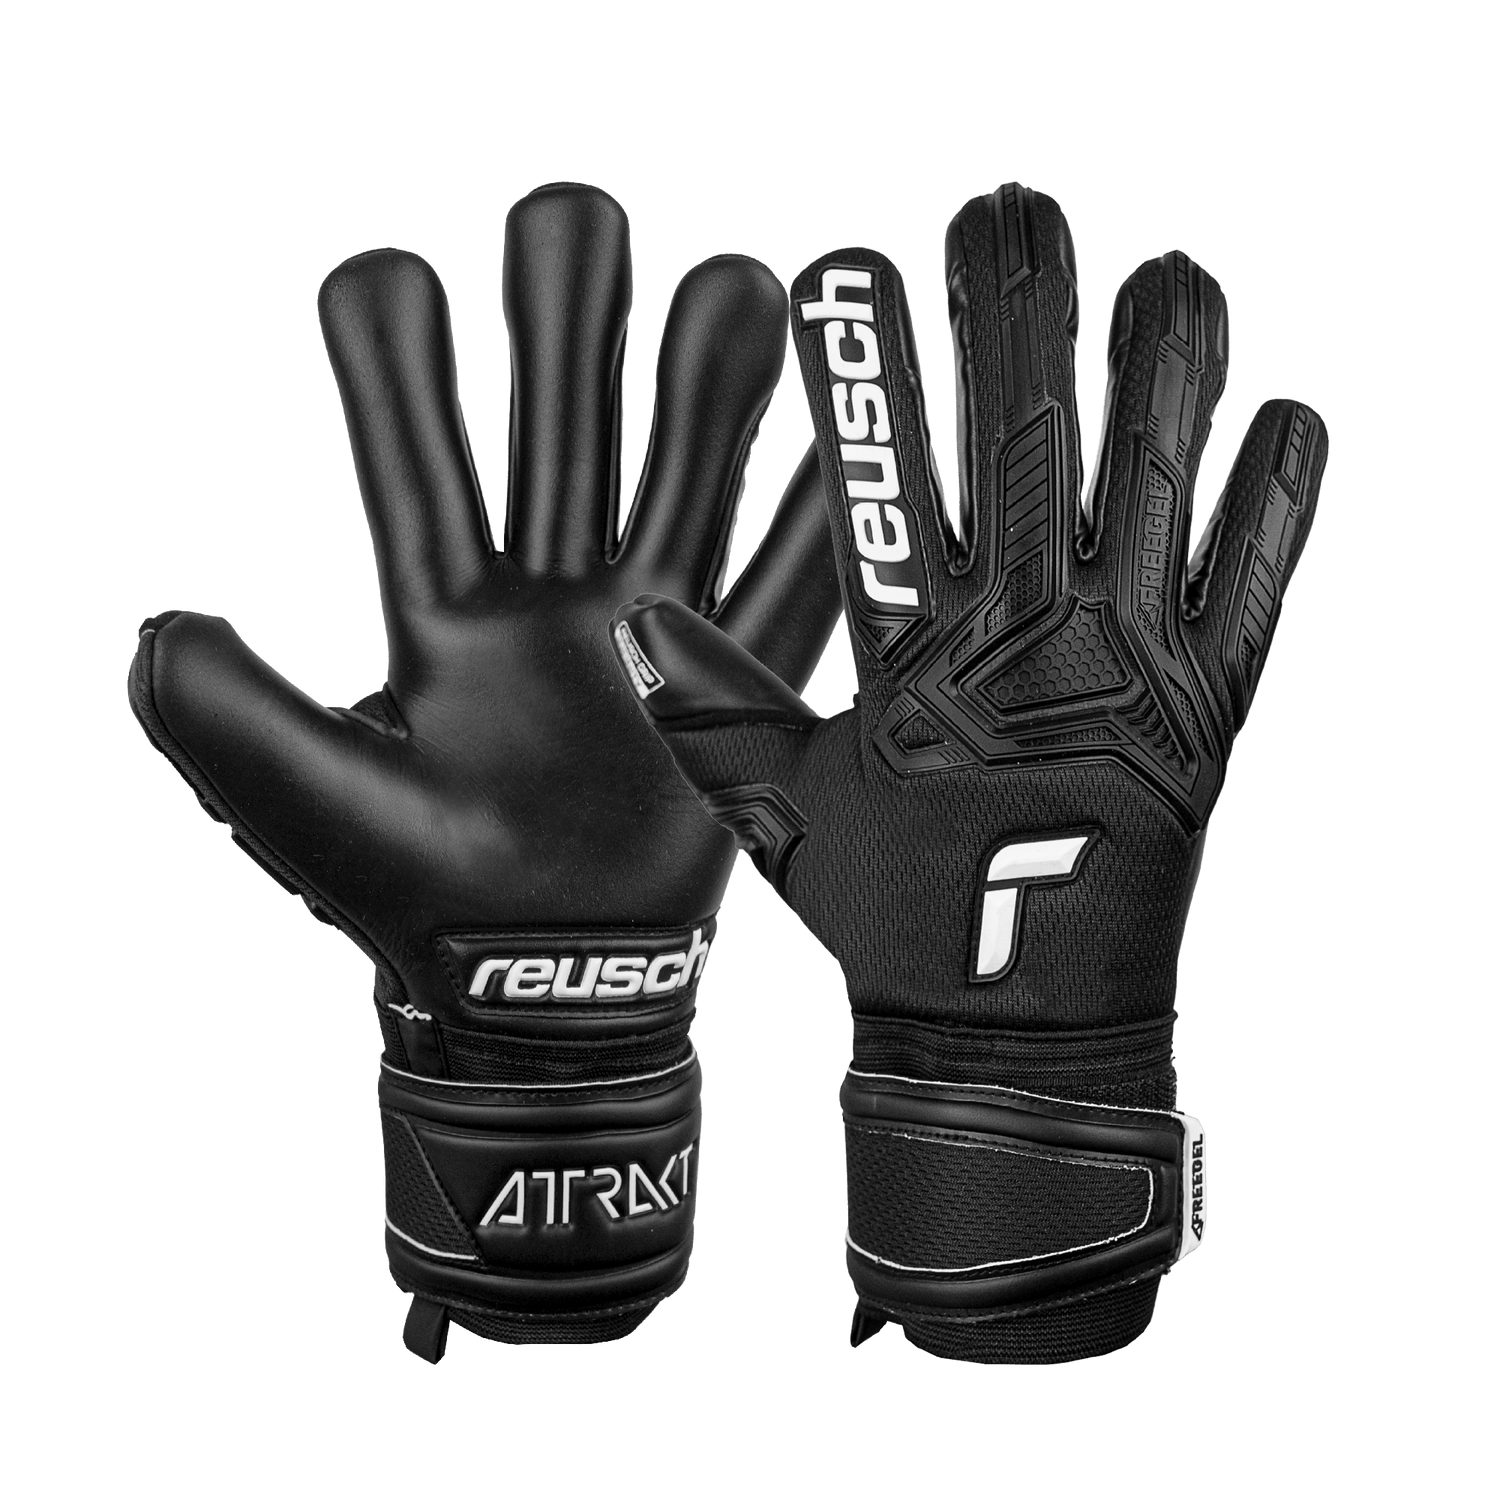 Reusch Attrakt Freegel Infinity FS Goalkeeper Glove - Black (Pair)